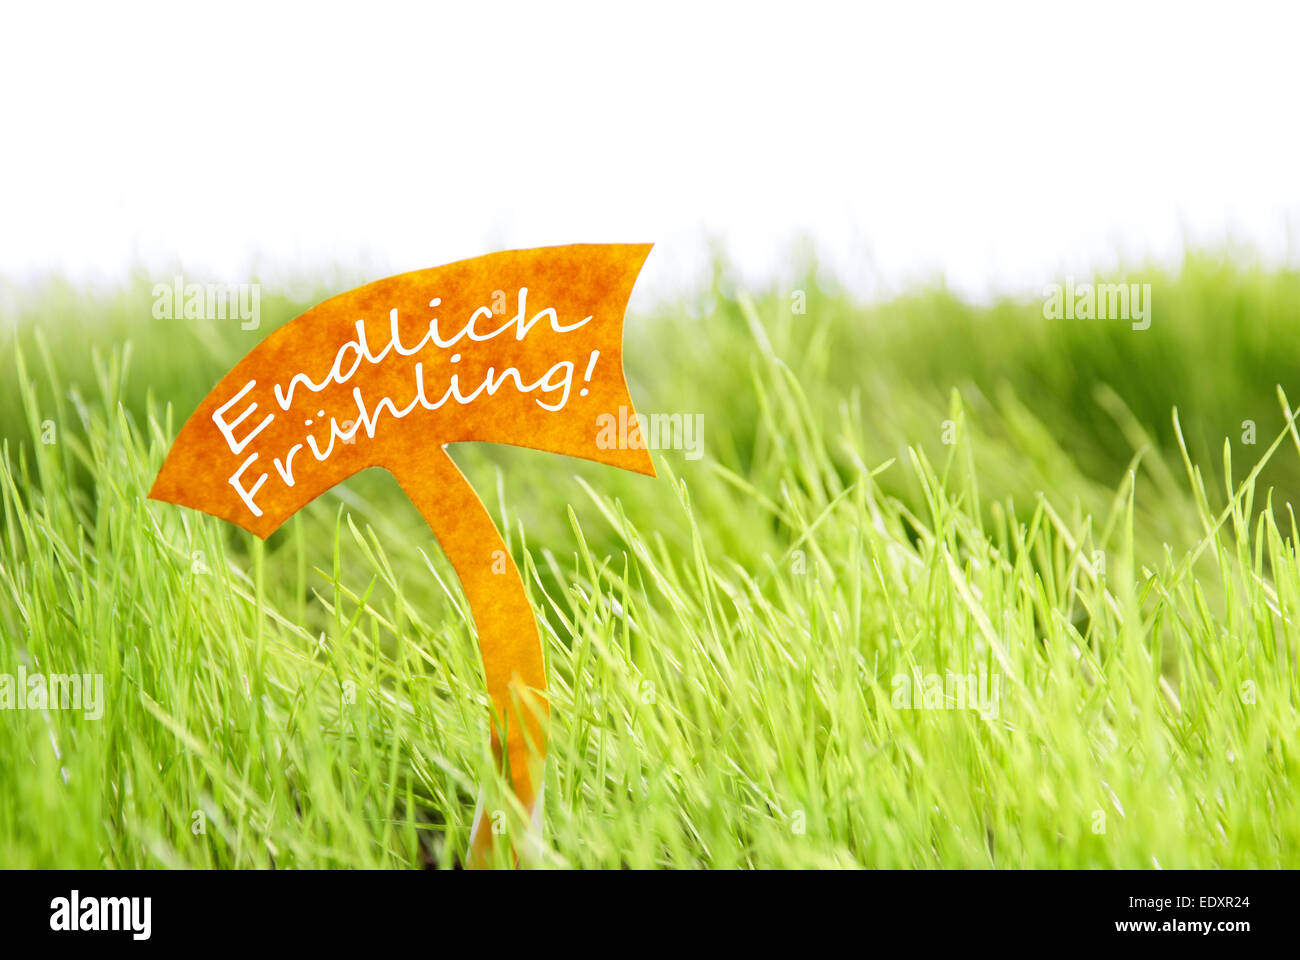 Etichetta con testo tedesco Endlich Frühling che significa primavera è spuntata in Sunny erba verde per la primavera o estate sensazione Foto Stock